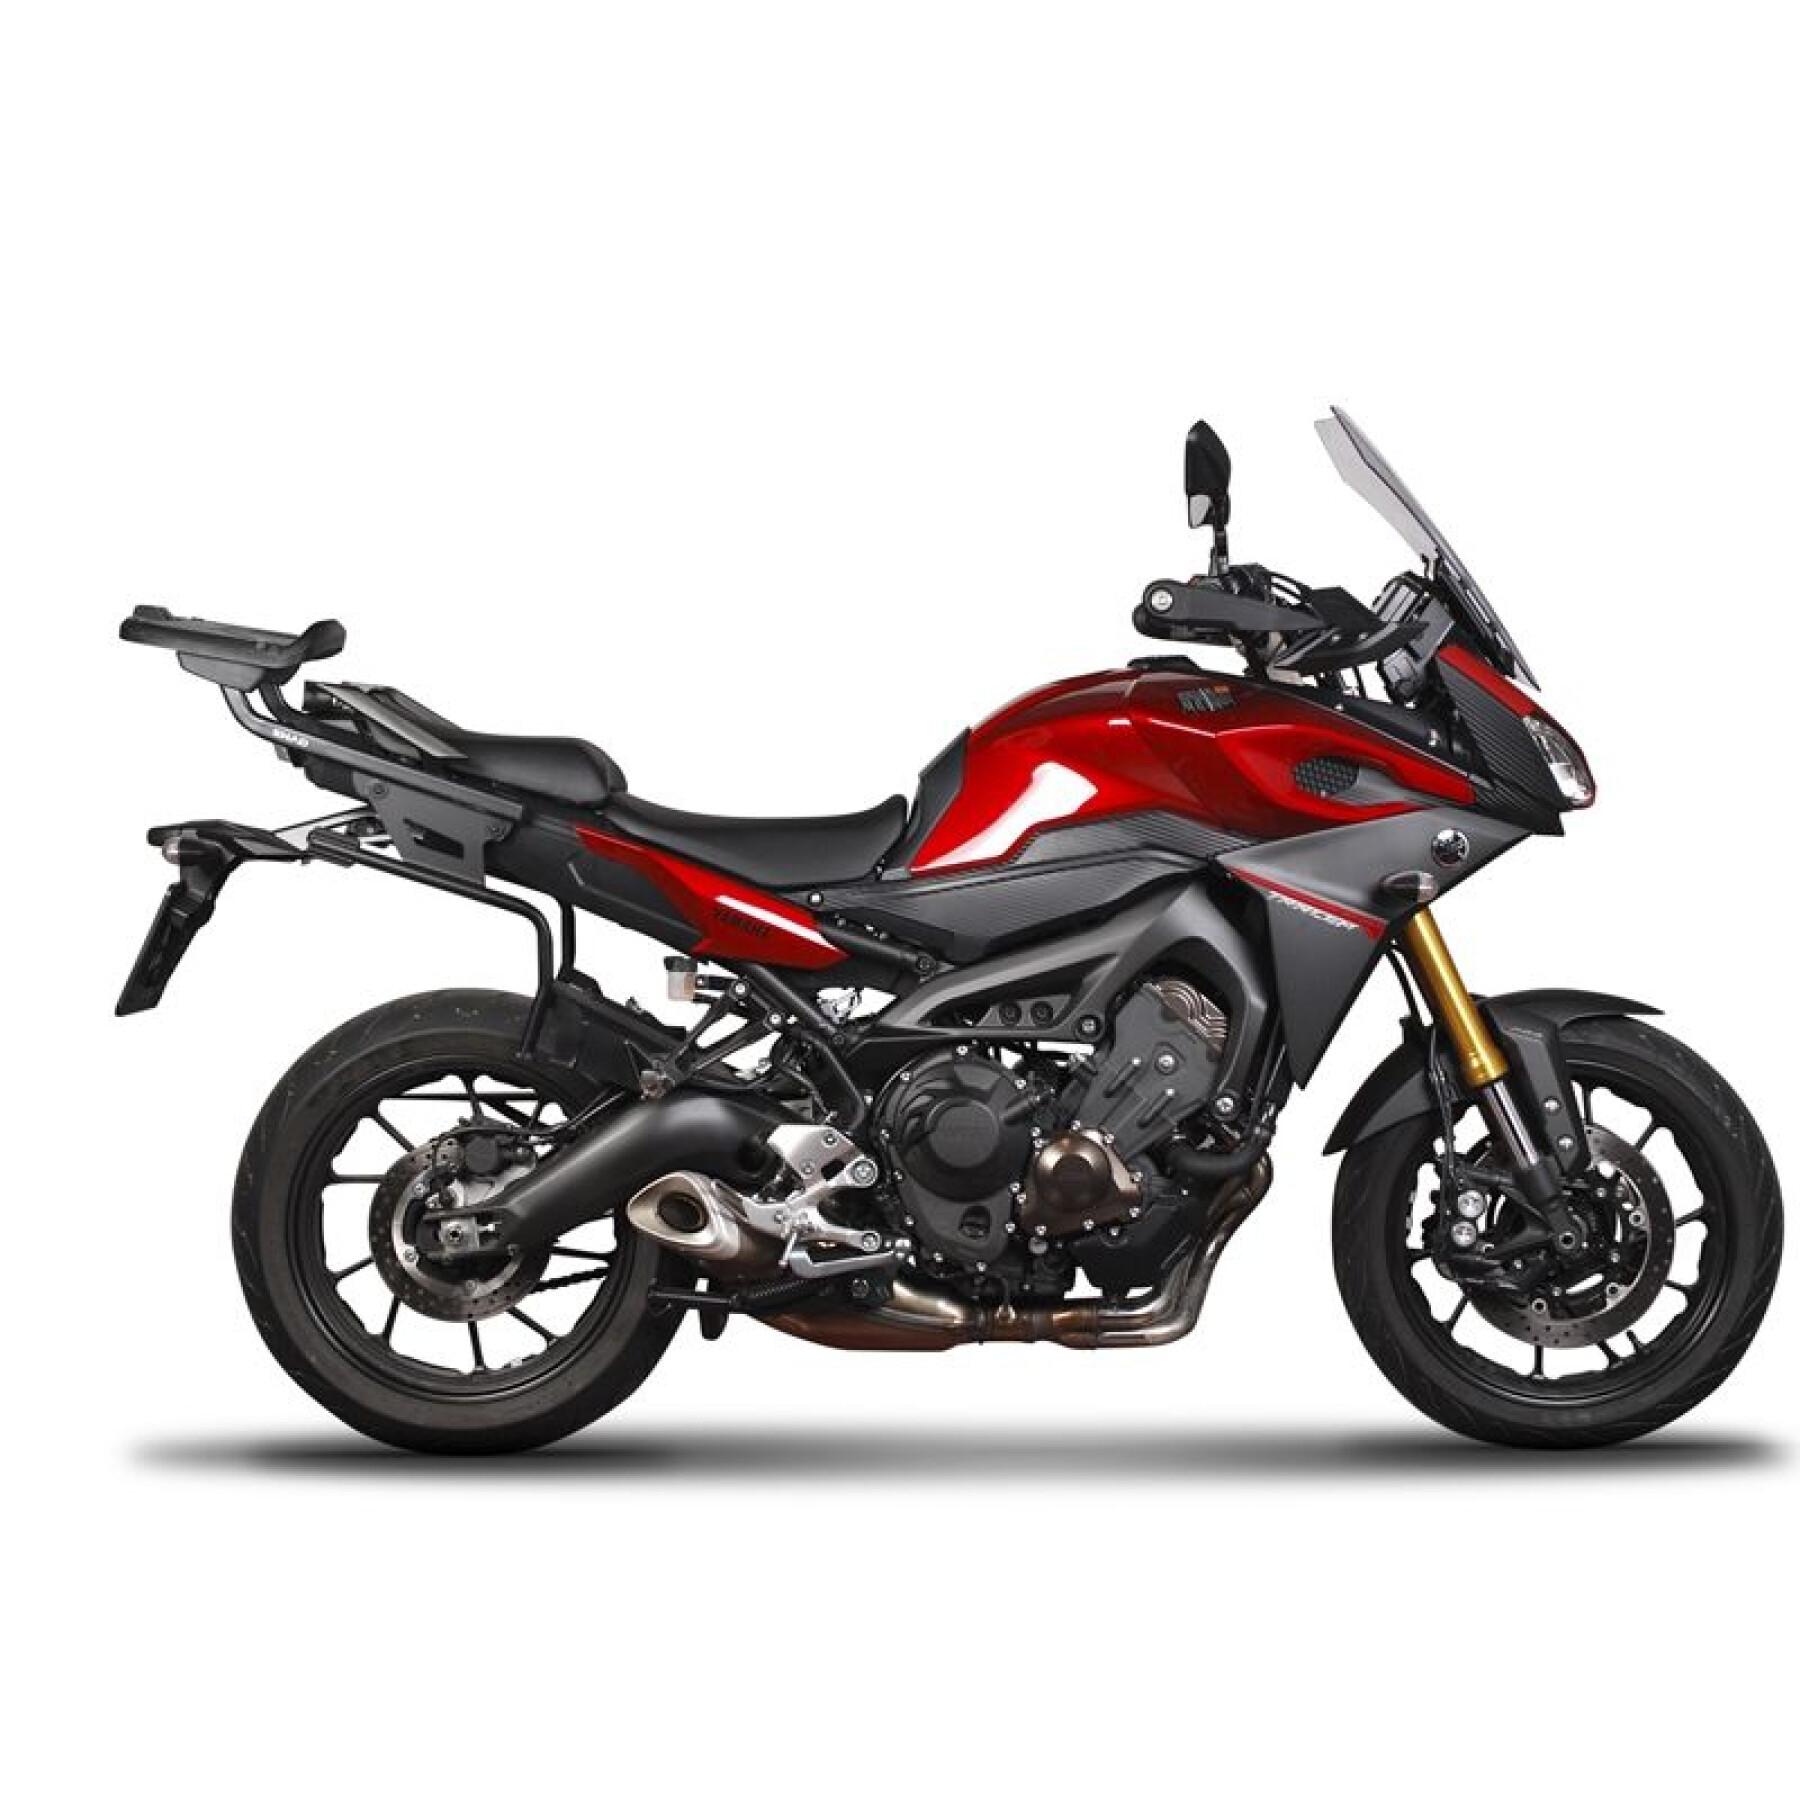 Sidostöd för motorcykel Shad 3P System Yamaha Mt 09 Tracer (15 À 17)